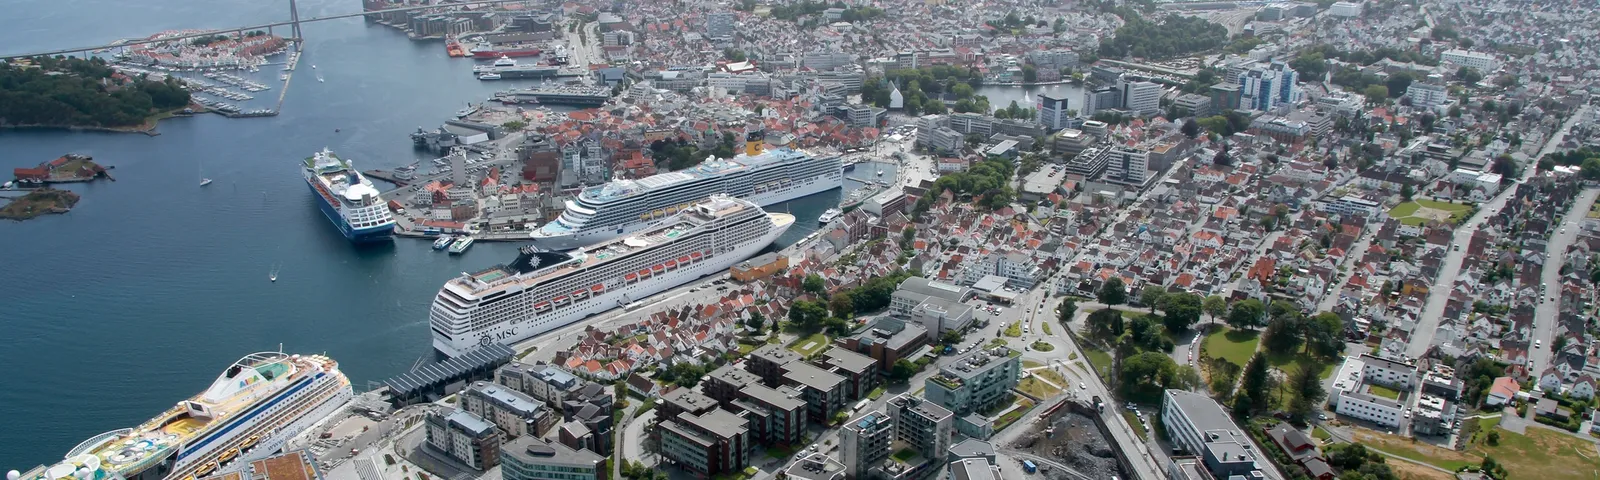 Flyfoto Vågen i Stavanger sentrum med cruiseskip